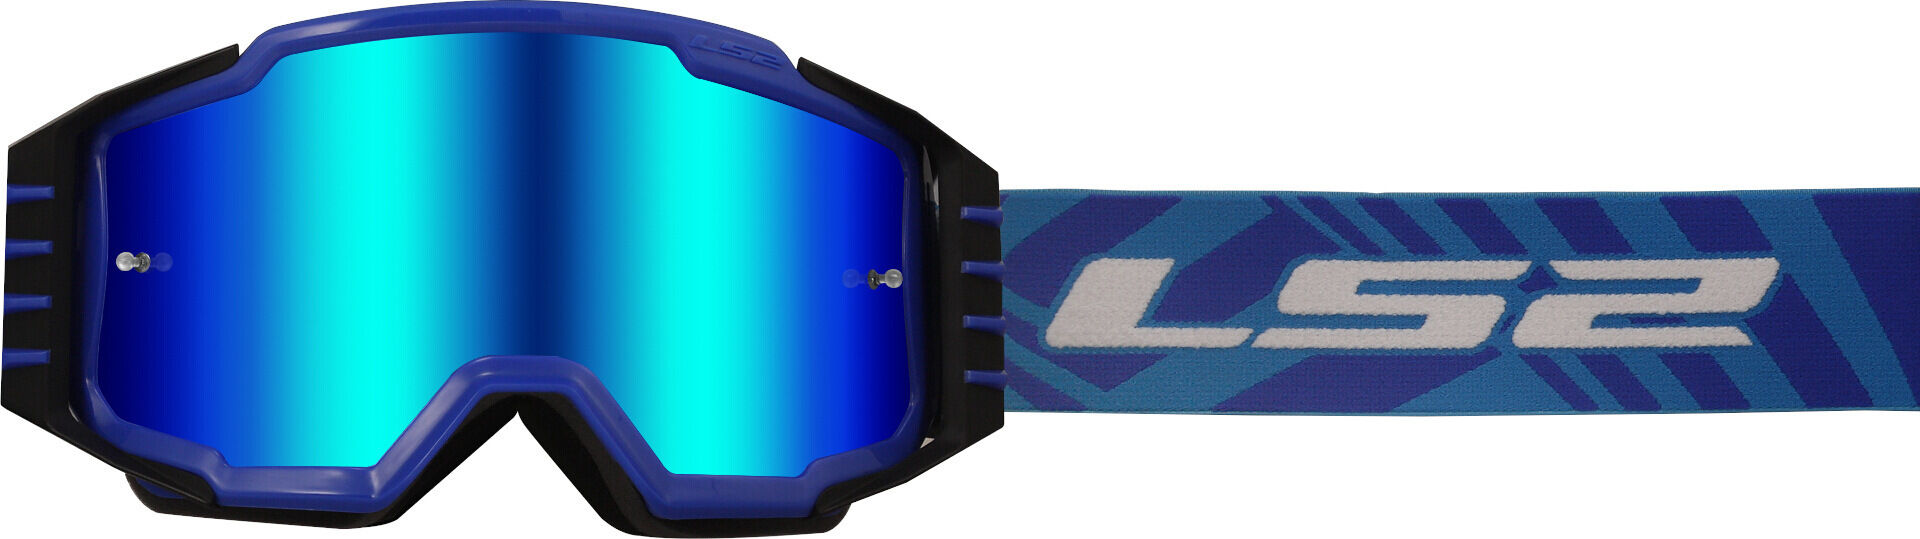 LS2 Charger Pro Gafas de motocross - Azul